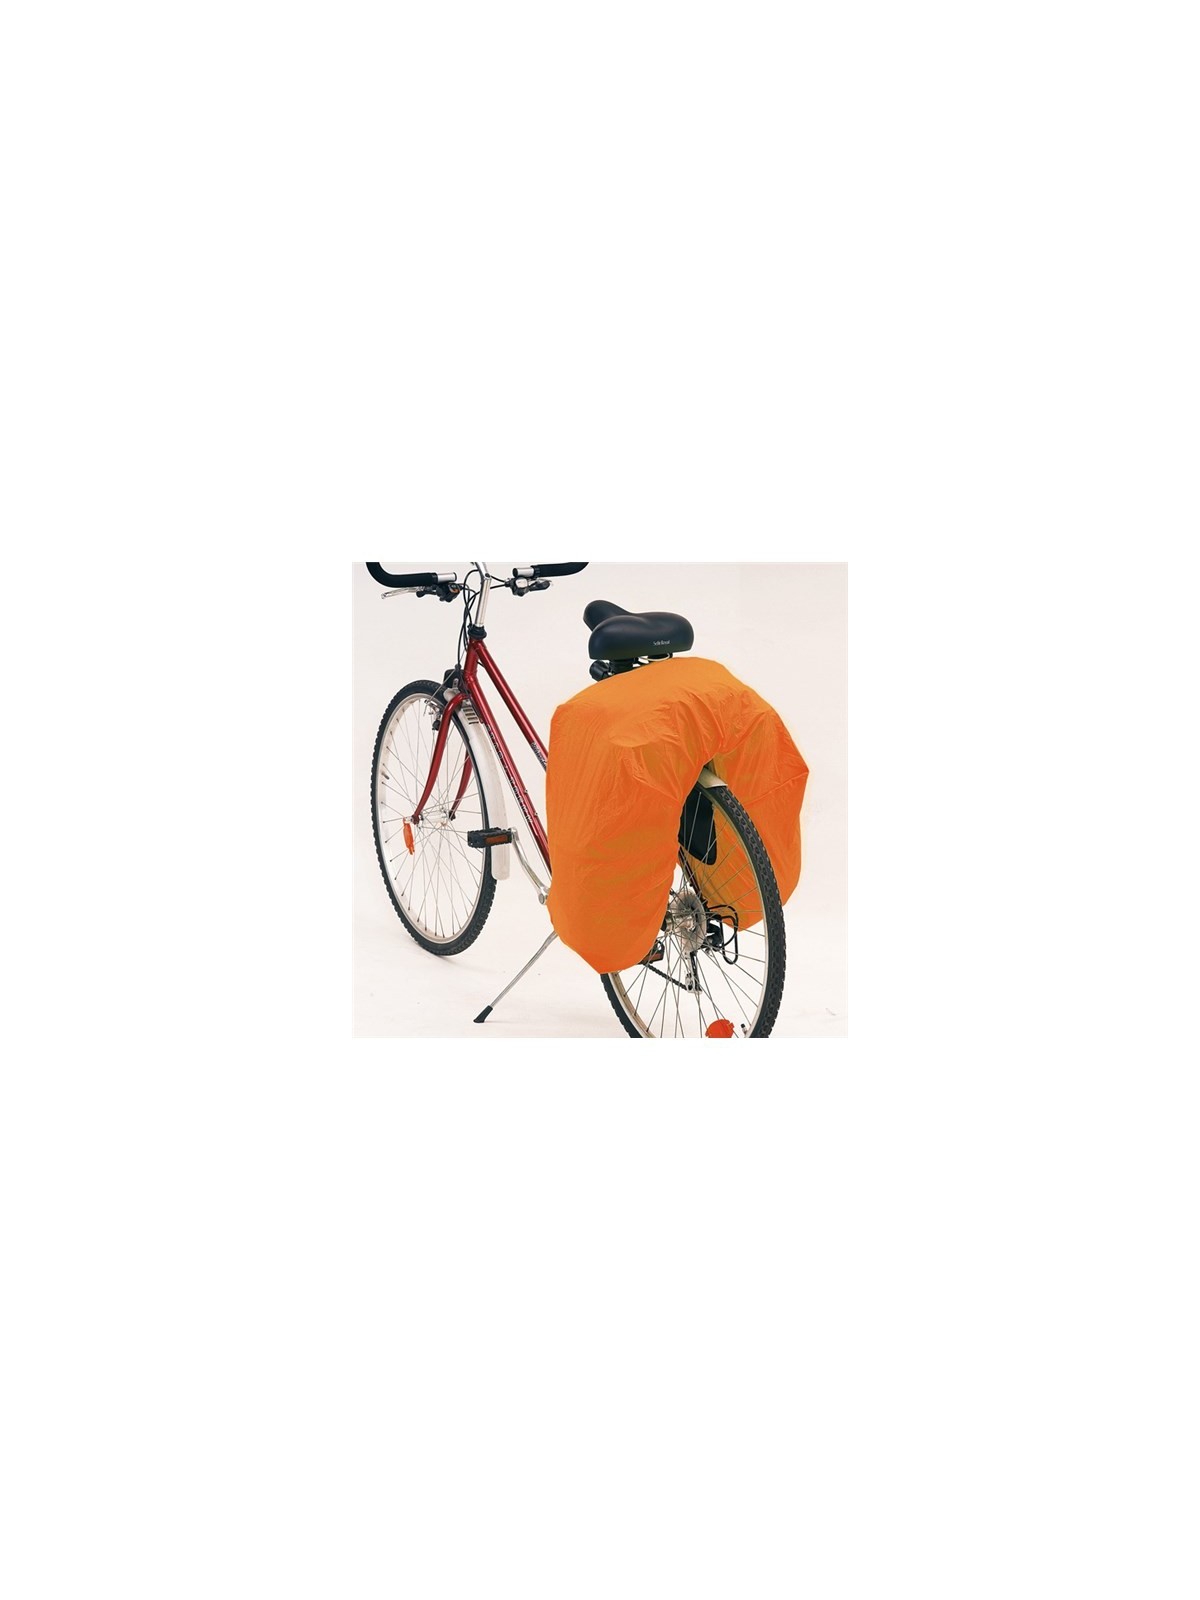 34-026 Set de sacs pour vélo "Bike" personnalisé